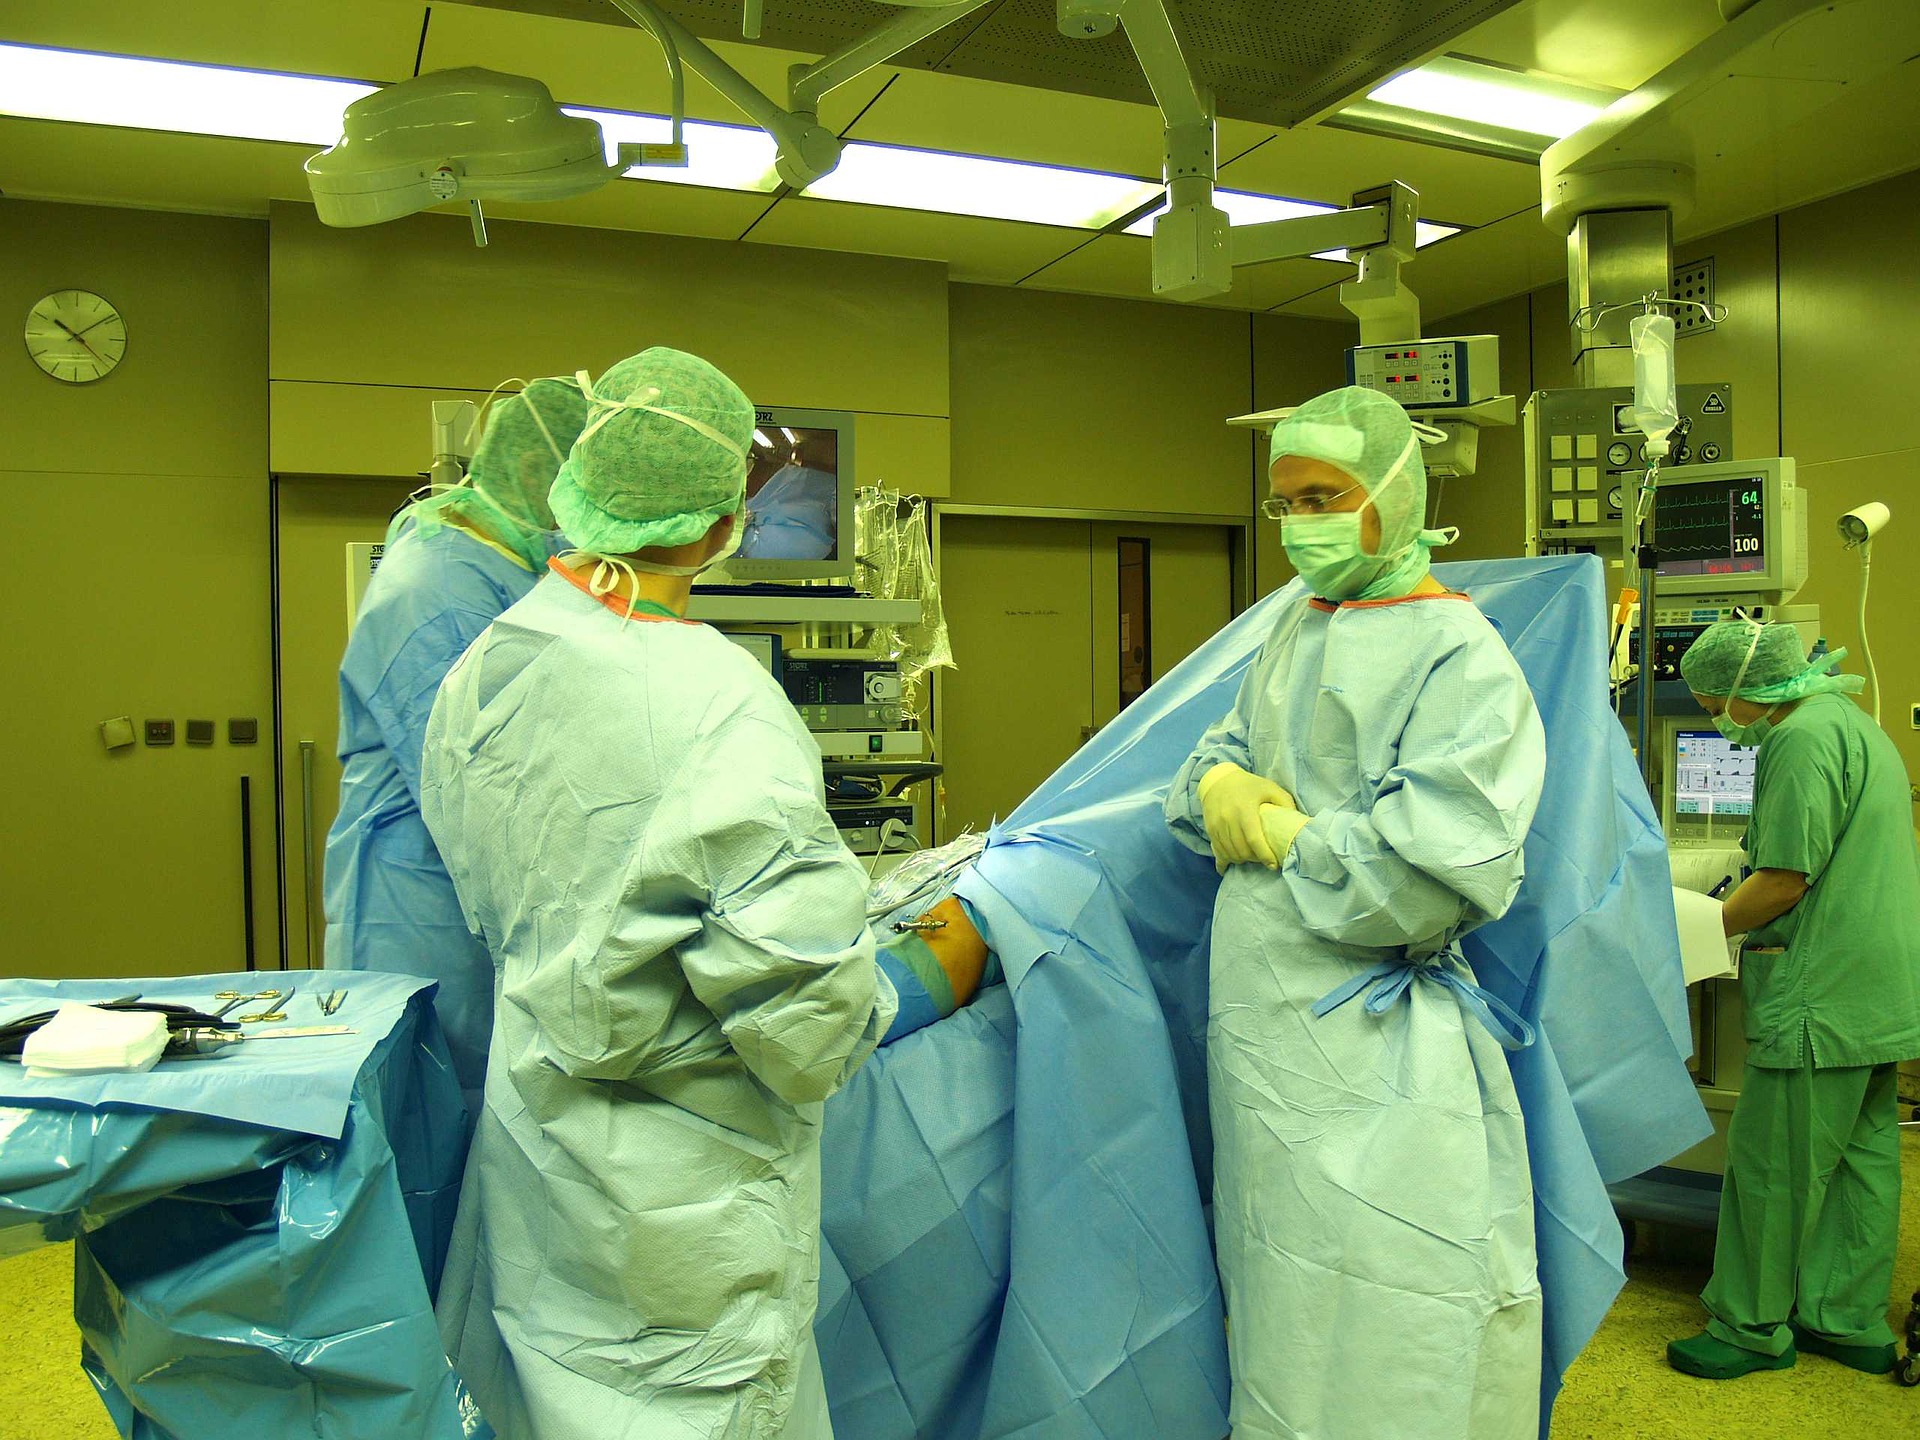 Un juzgado de Oviedo archiva la investigación de la muerte de un paciente del servicio de cirugía cardíaca del Hospital de Asturias por el presunto olvido de unas gasas tras una operación